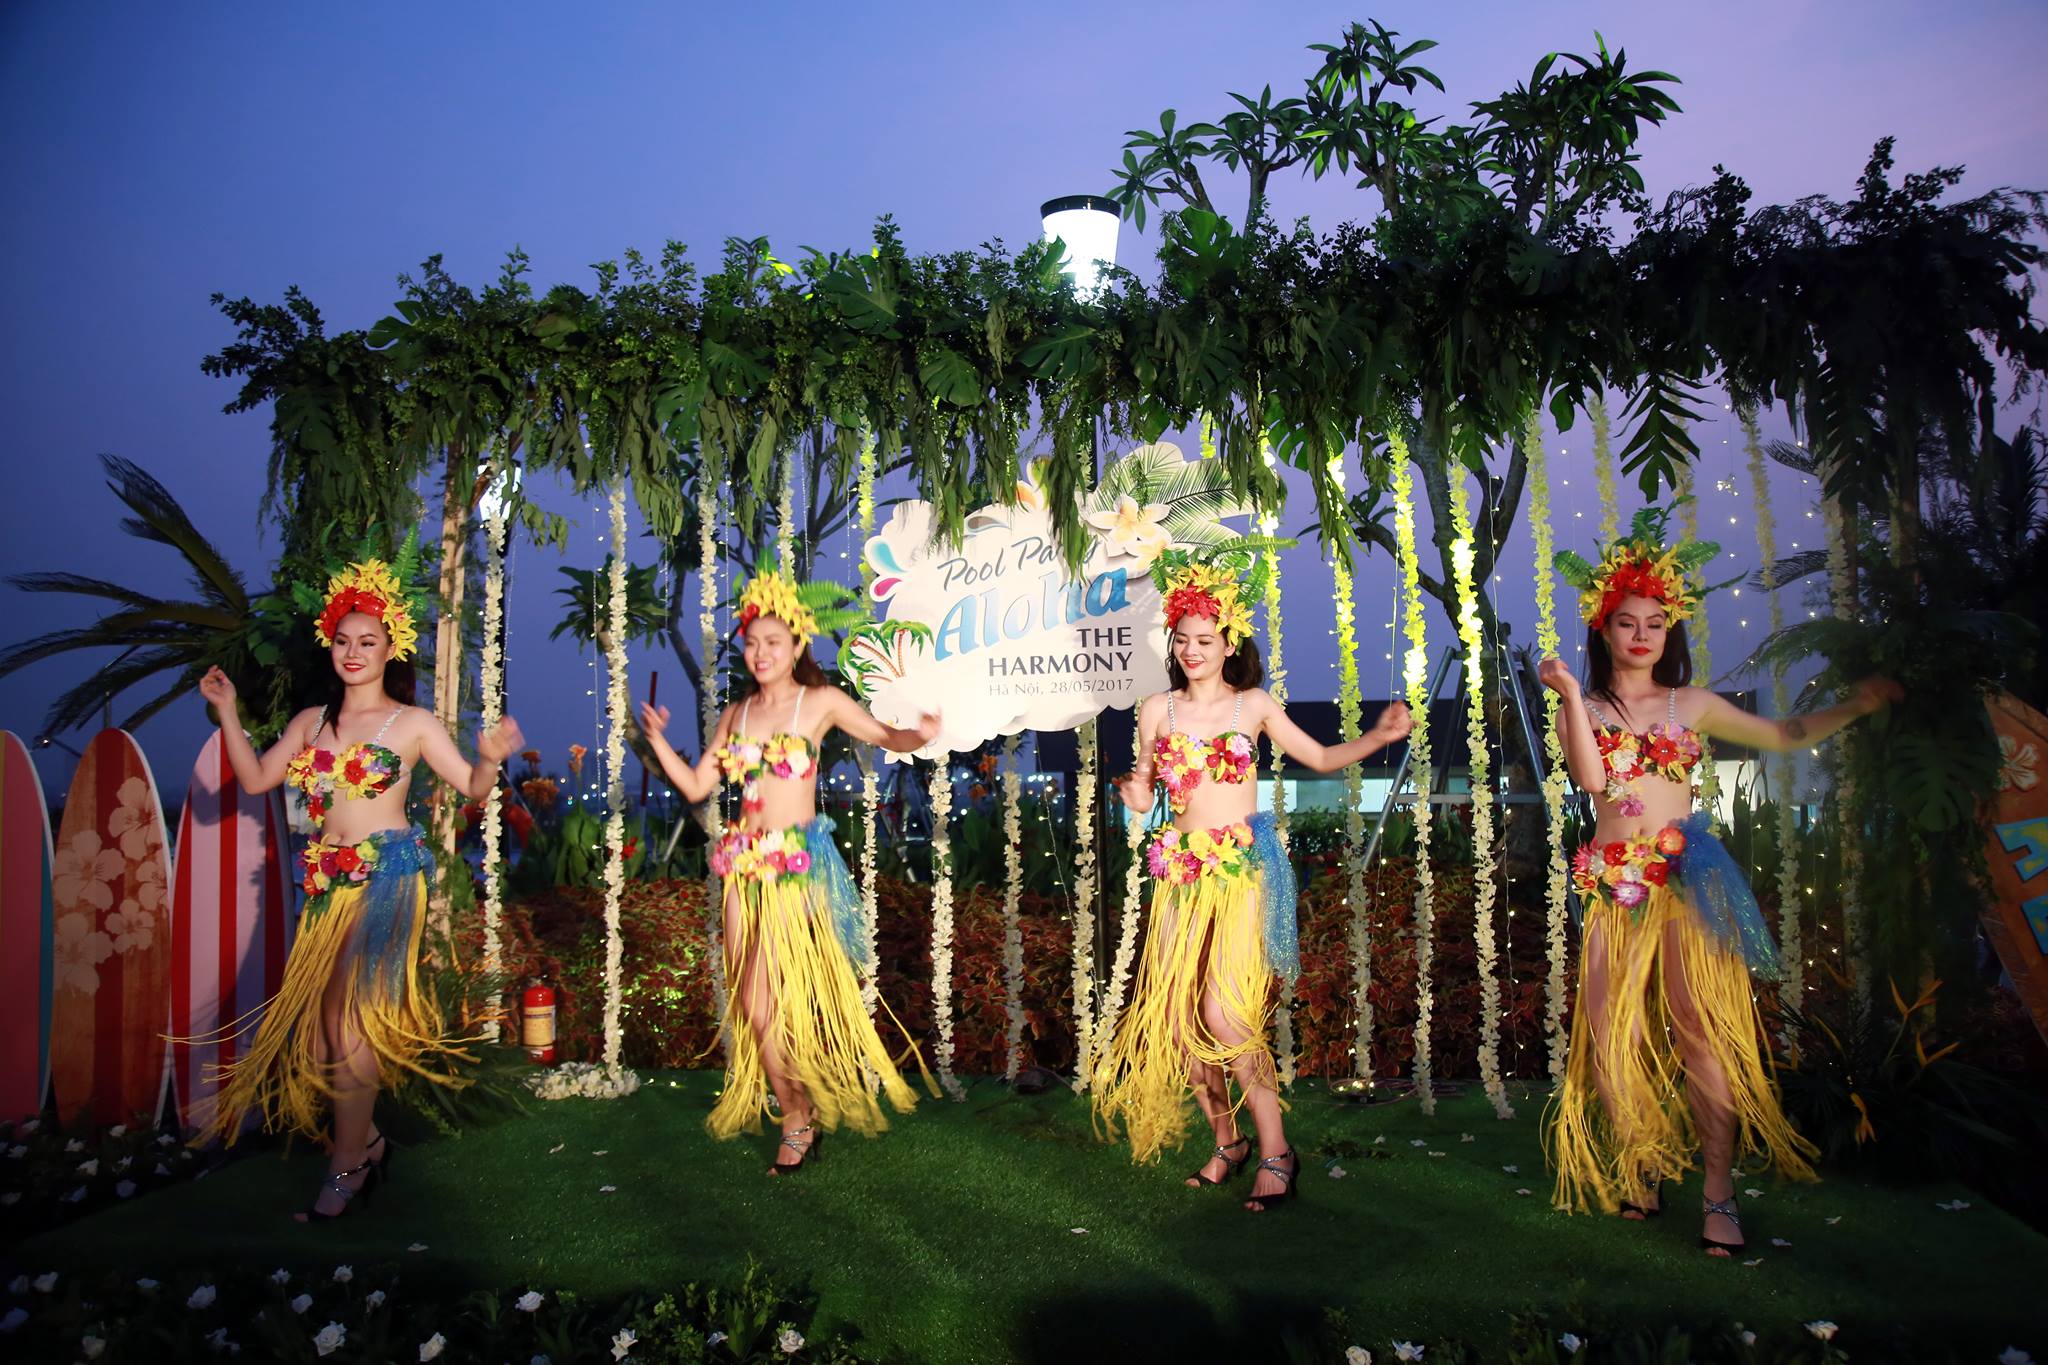 Mở màn chương trình là nhóm múa Bellydance với trang phục biển màu sắc bắt mắt 